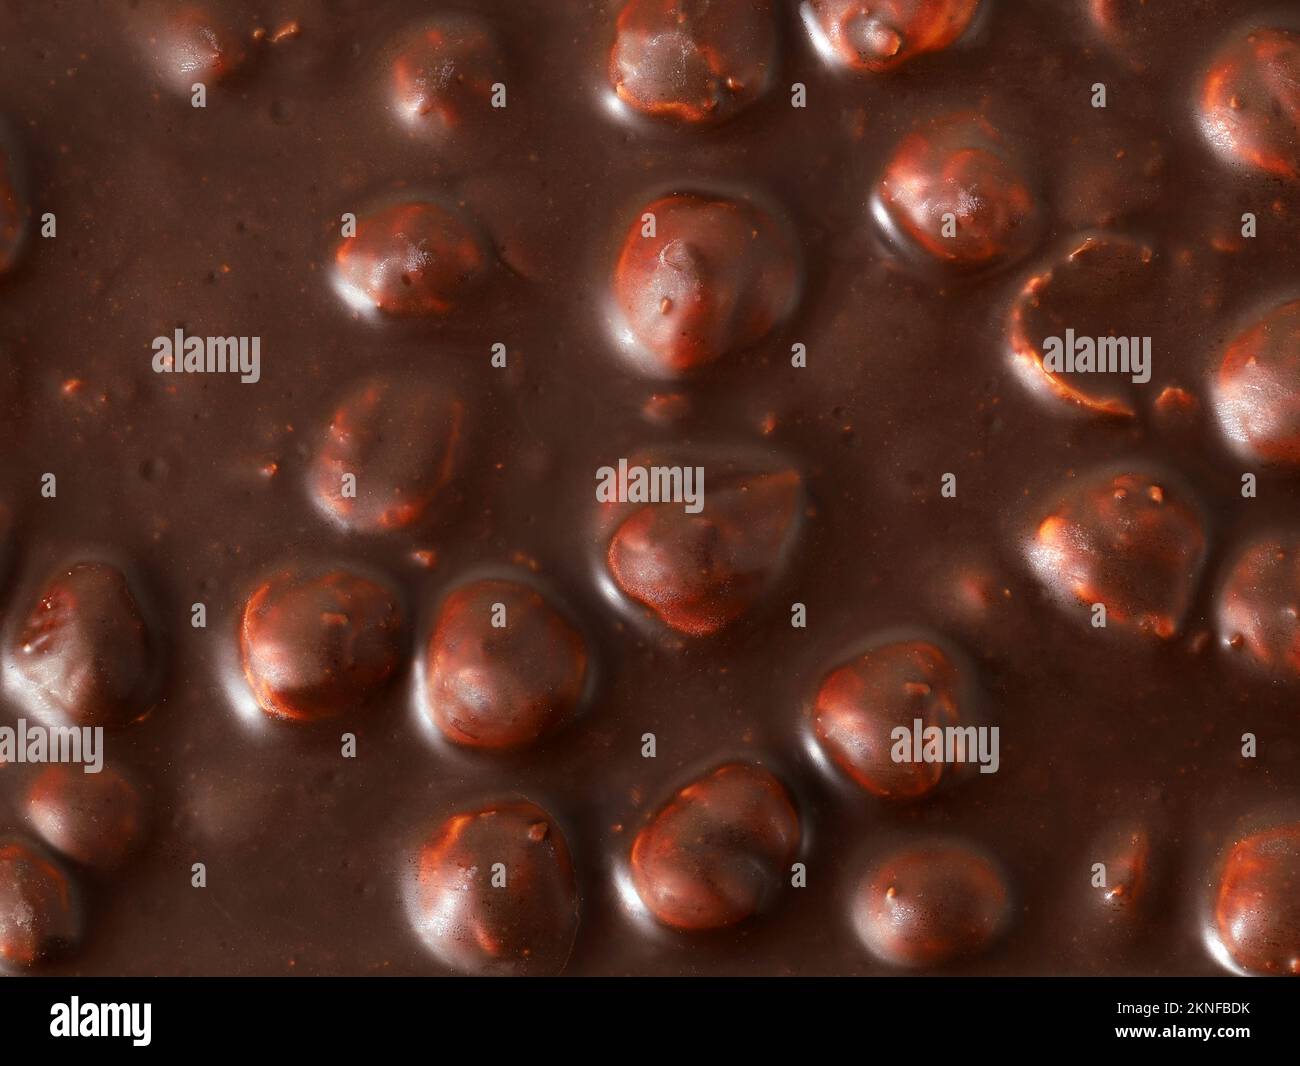 Leckere dunkle Schokolade mit Haselnüssen als Hintergrund, Blick von oben auf die in dunkler Schokolade geschmolzenen Haselnüsse Stockfoto